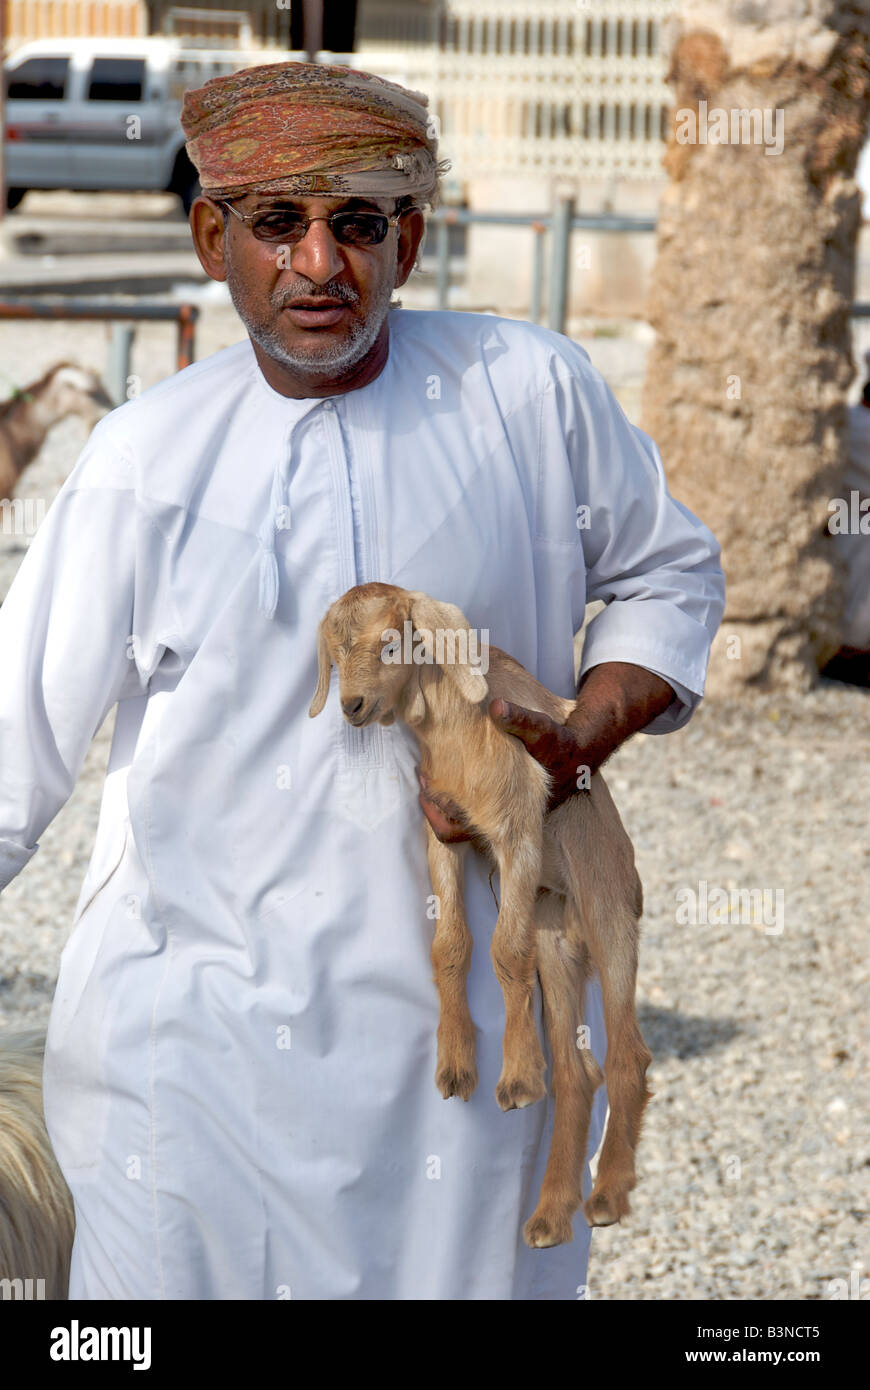 Mann mit Baby Ziege Vieh Souk oder vermarkten Nizwa Al Dakhiliyah Region Sultanat von Oman Stockfoto